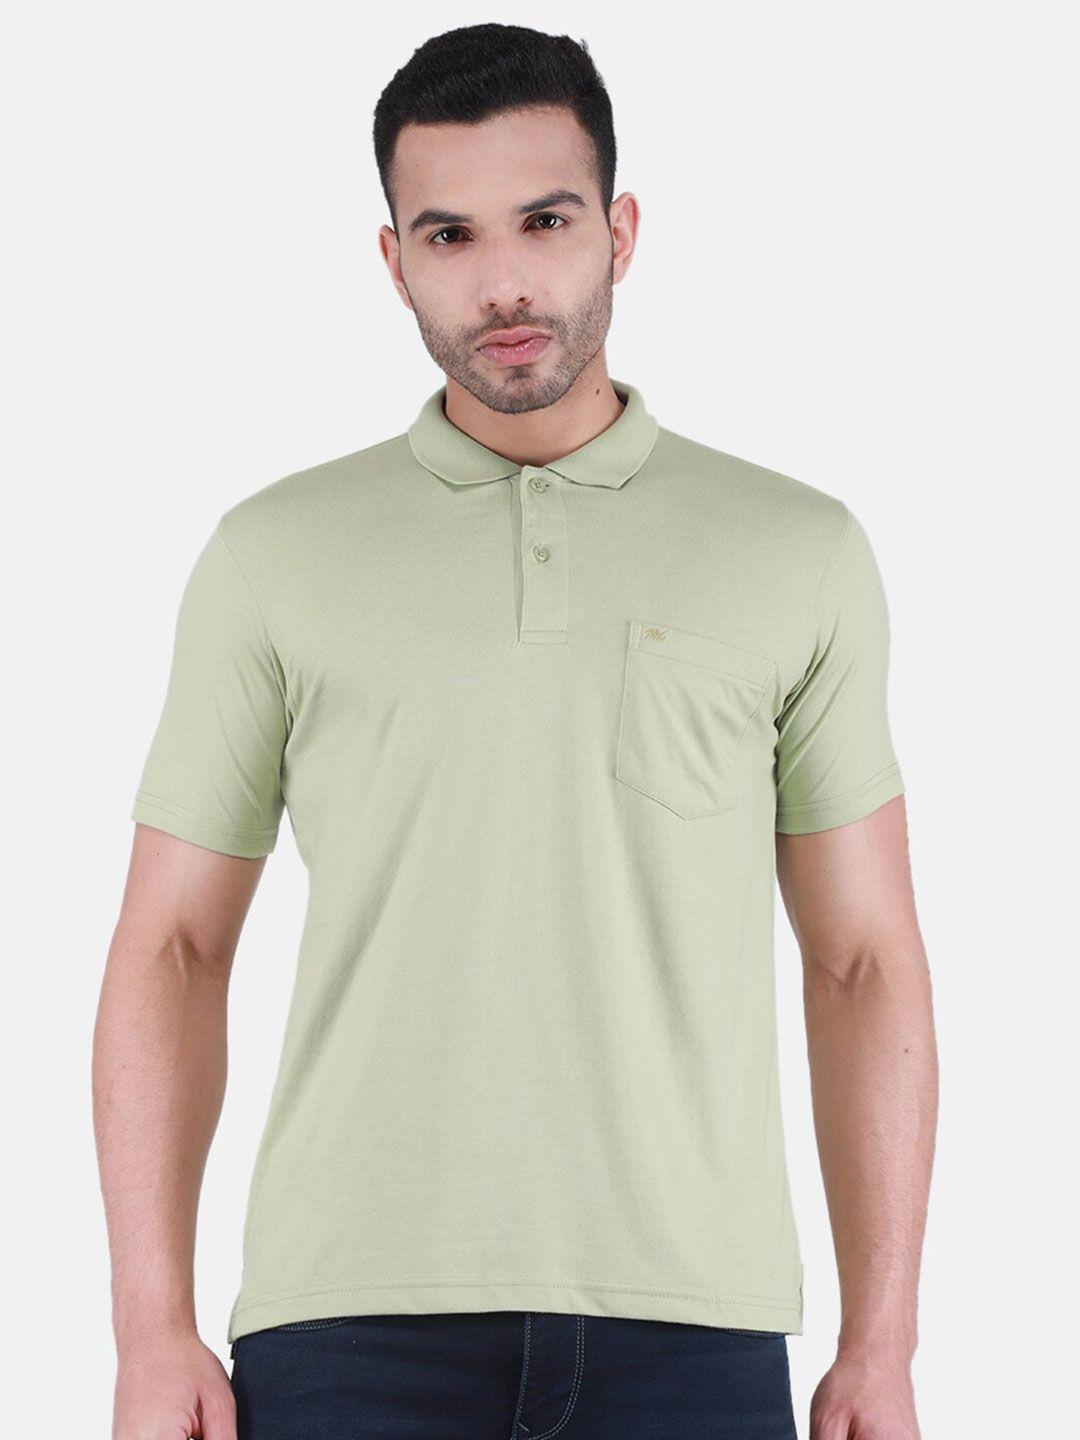 monte-carlo-polo-collar-cotton-t-shirt